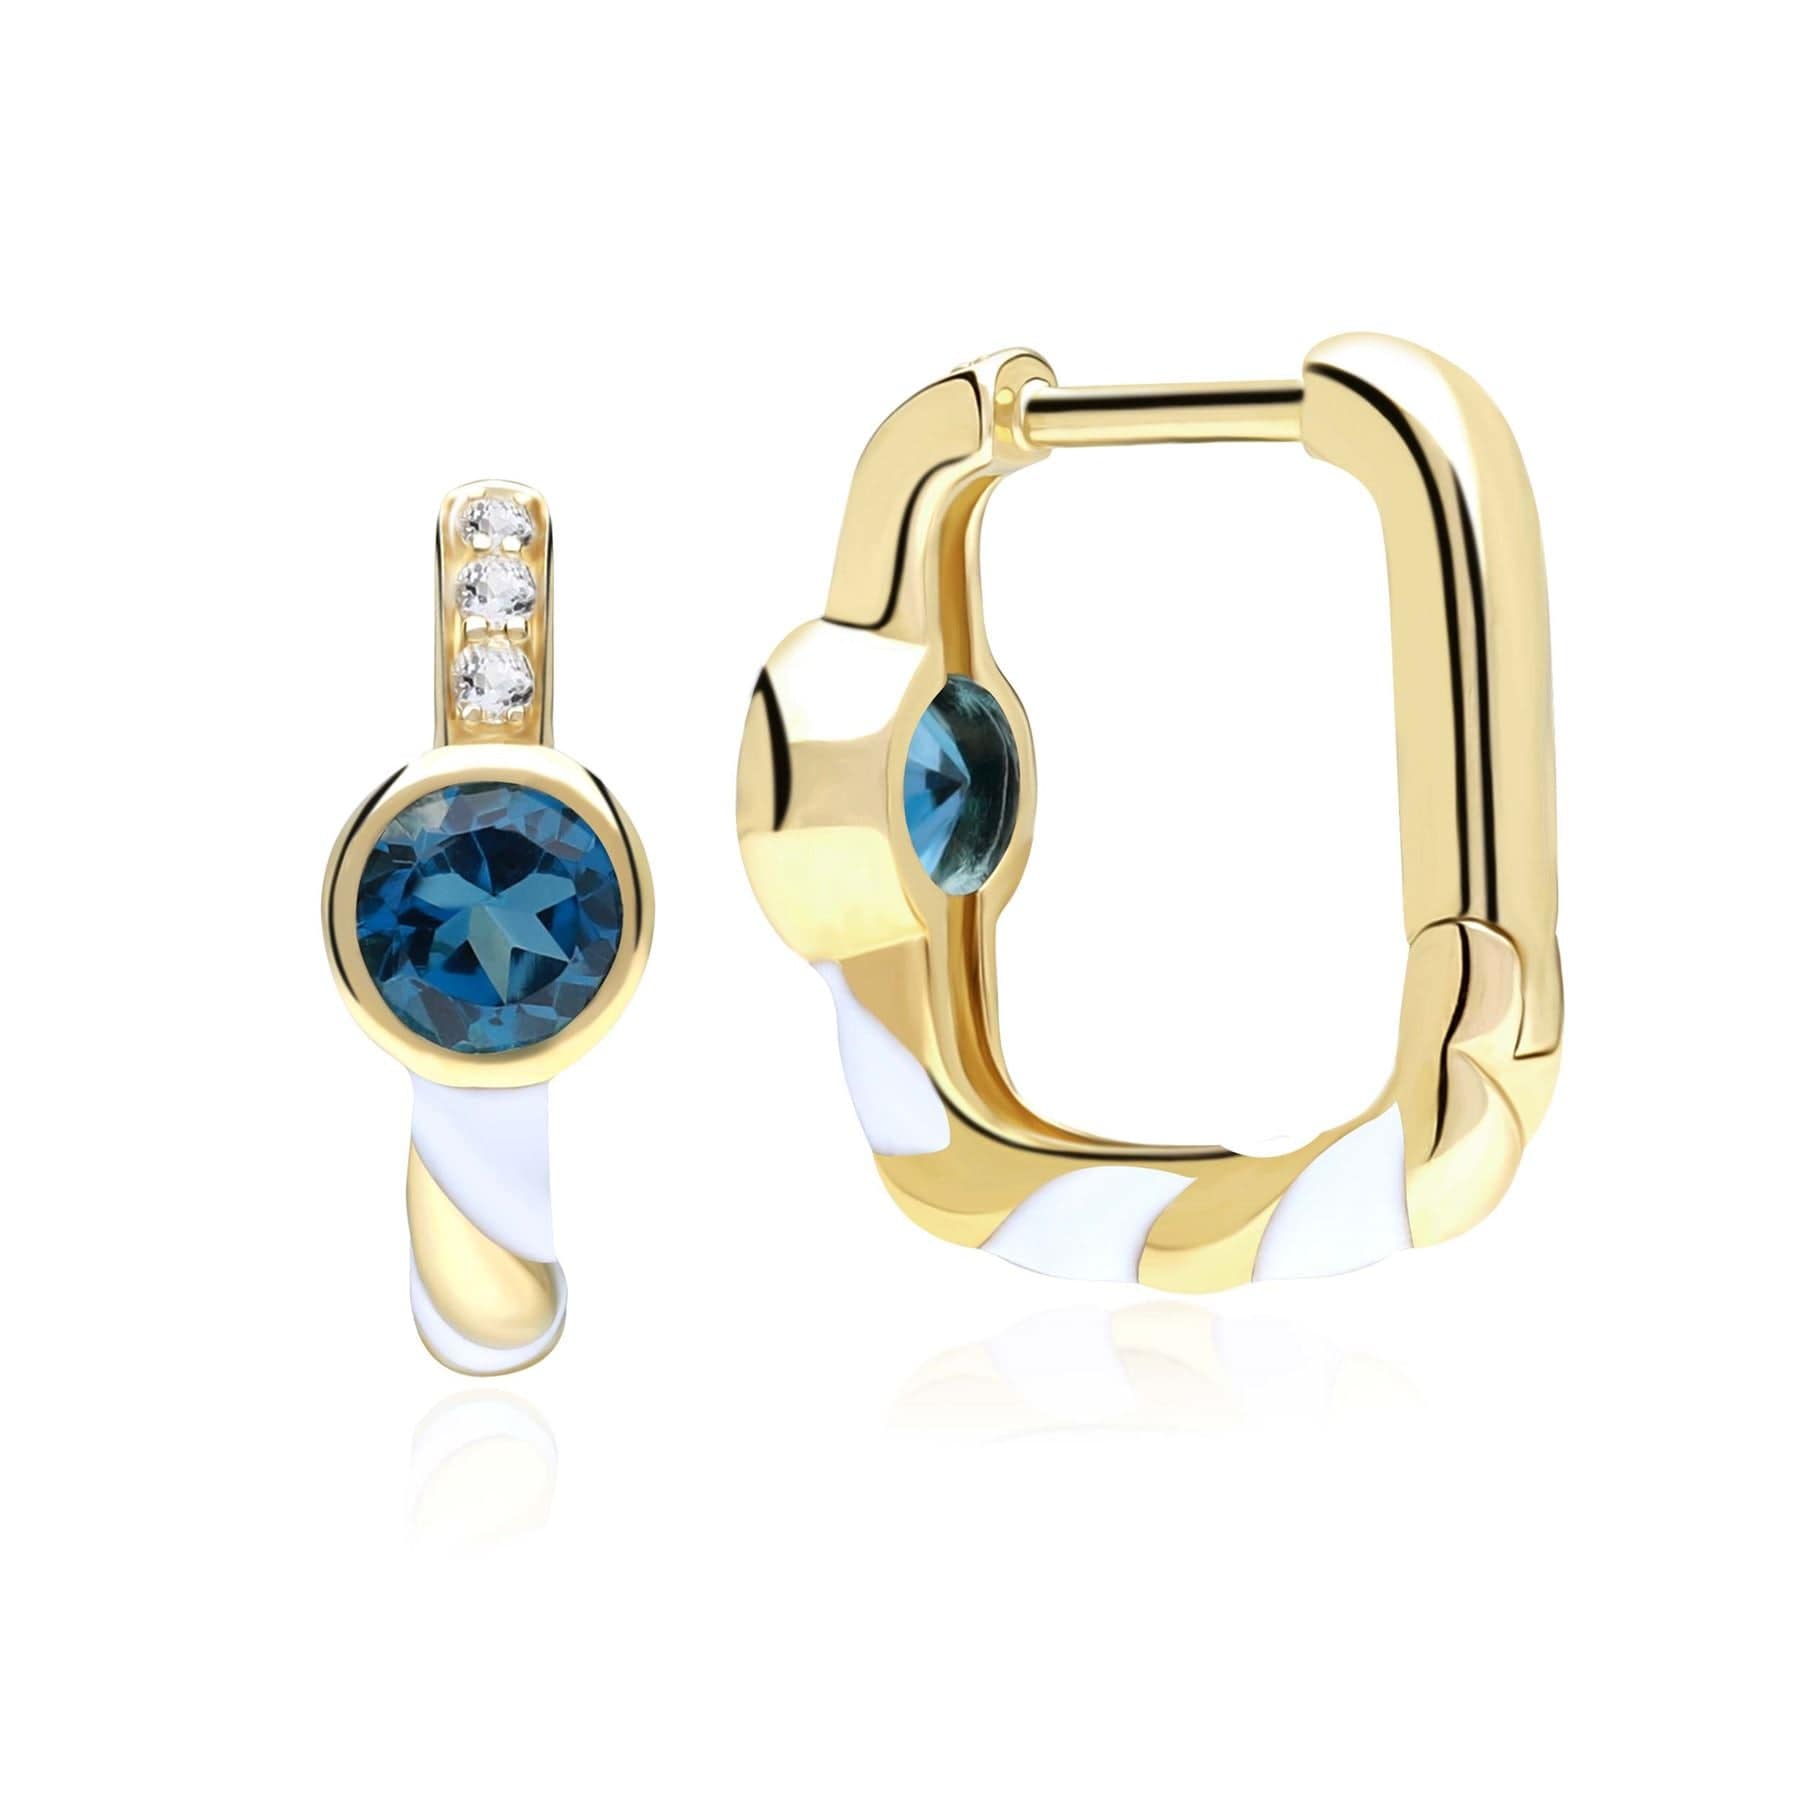 Siberian Waltz London Blue Topaz Square Hoop Earrings in 9ct Gold - Gemondo